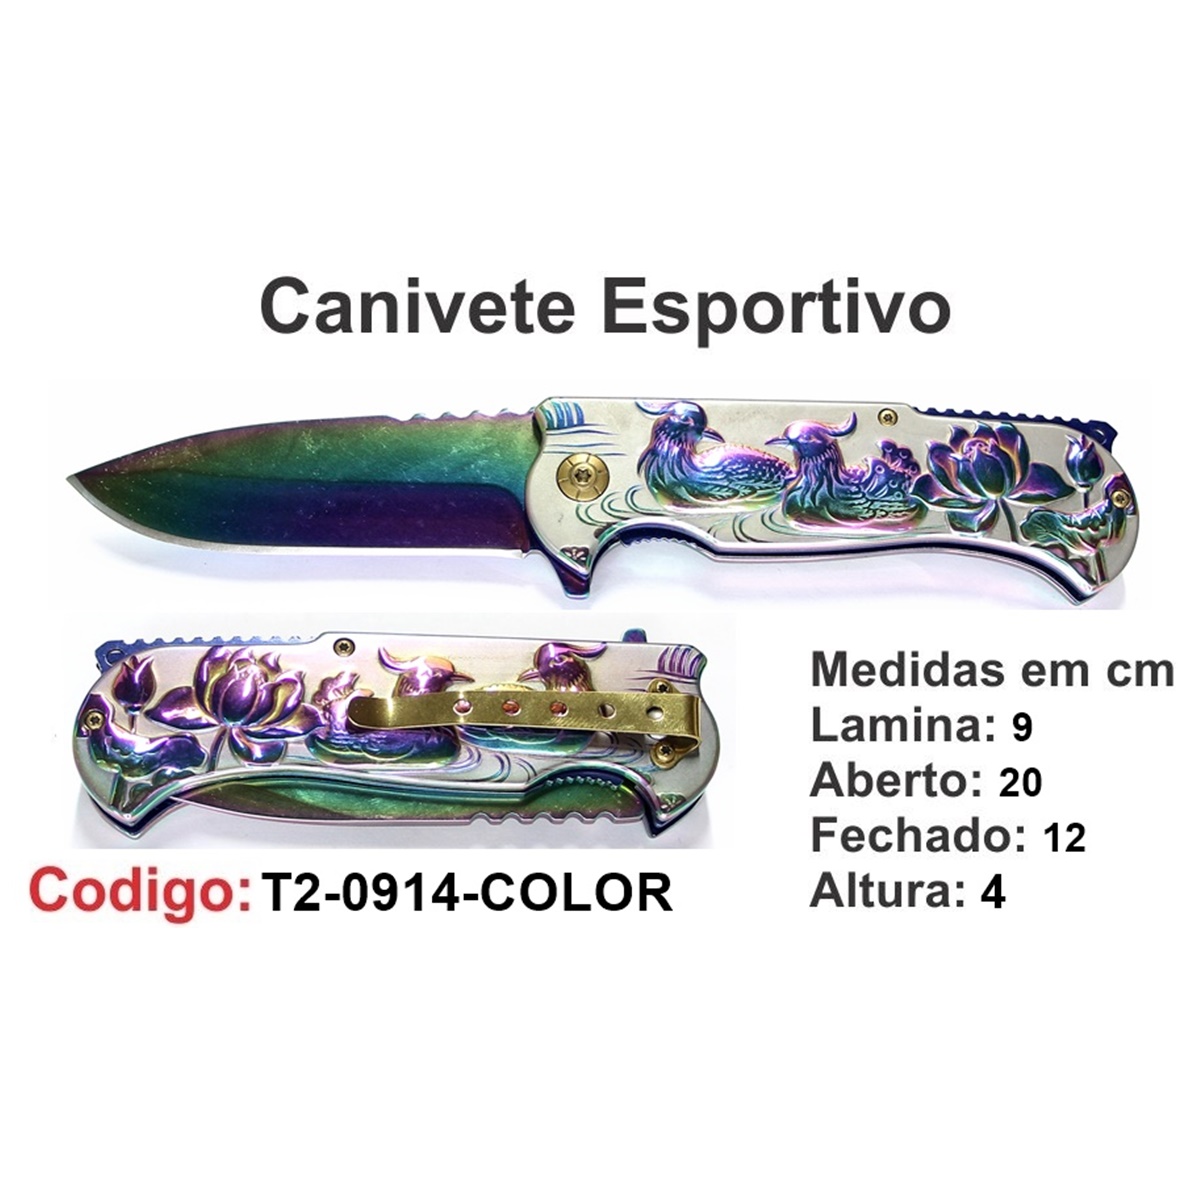 Canivete Esportivo Caça Pesca Etc. T2-0914-COLOR